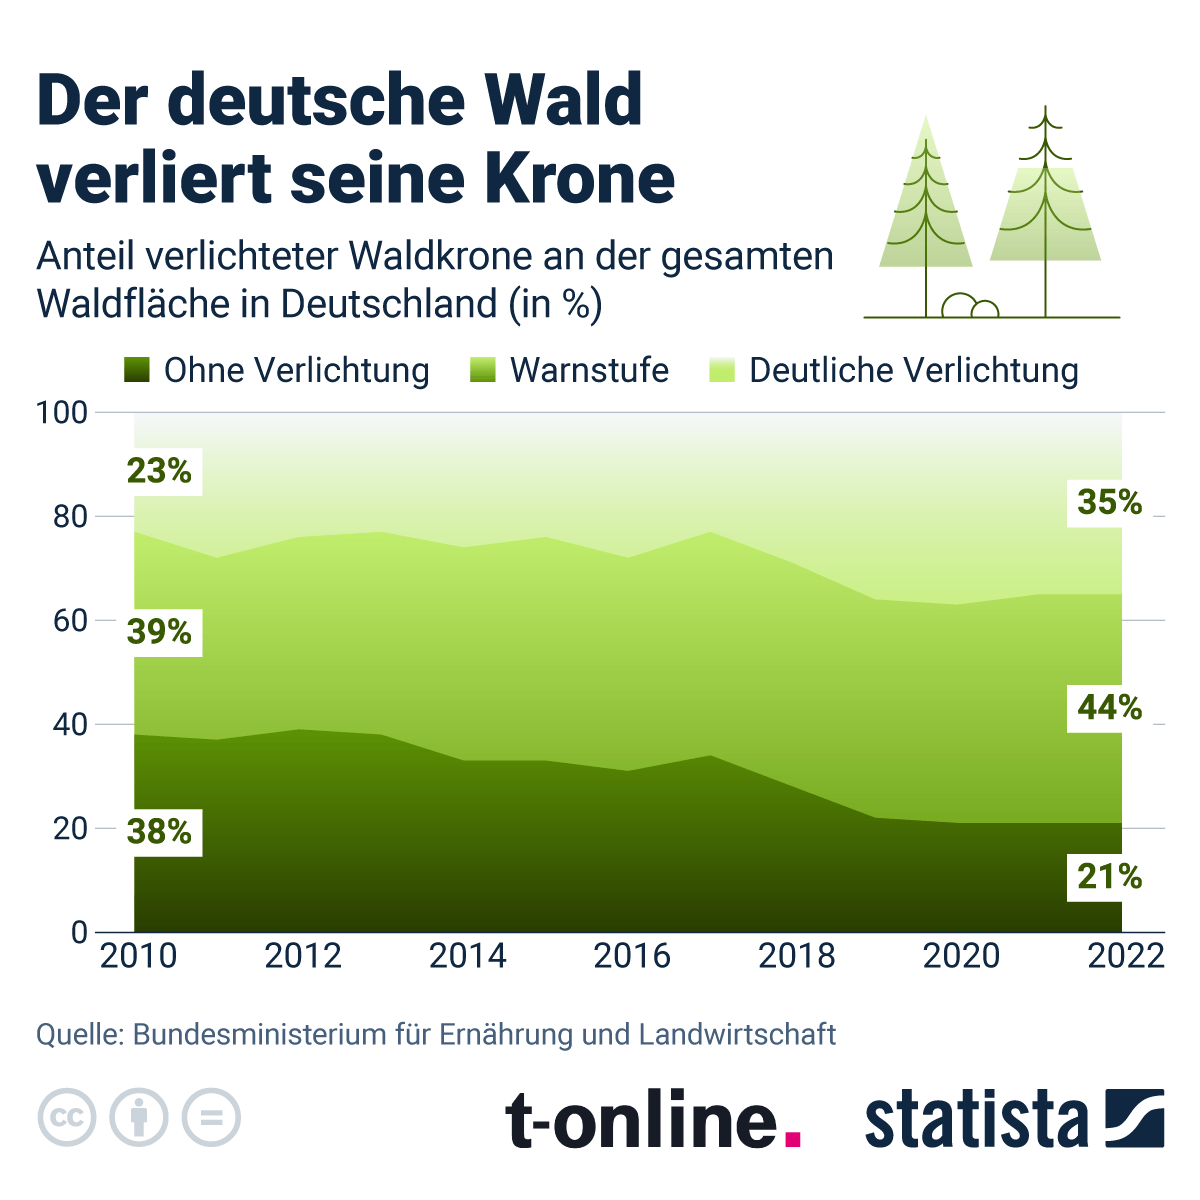 Anteil der verlichteten Waldkrone an der gesamten Waldfläche Deutschlands.